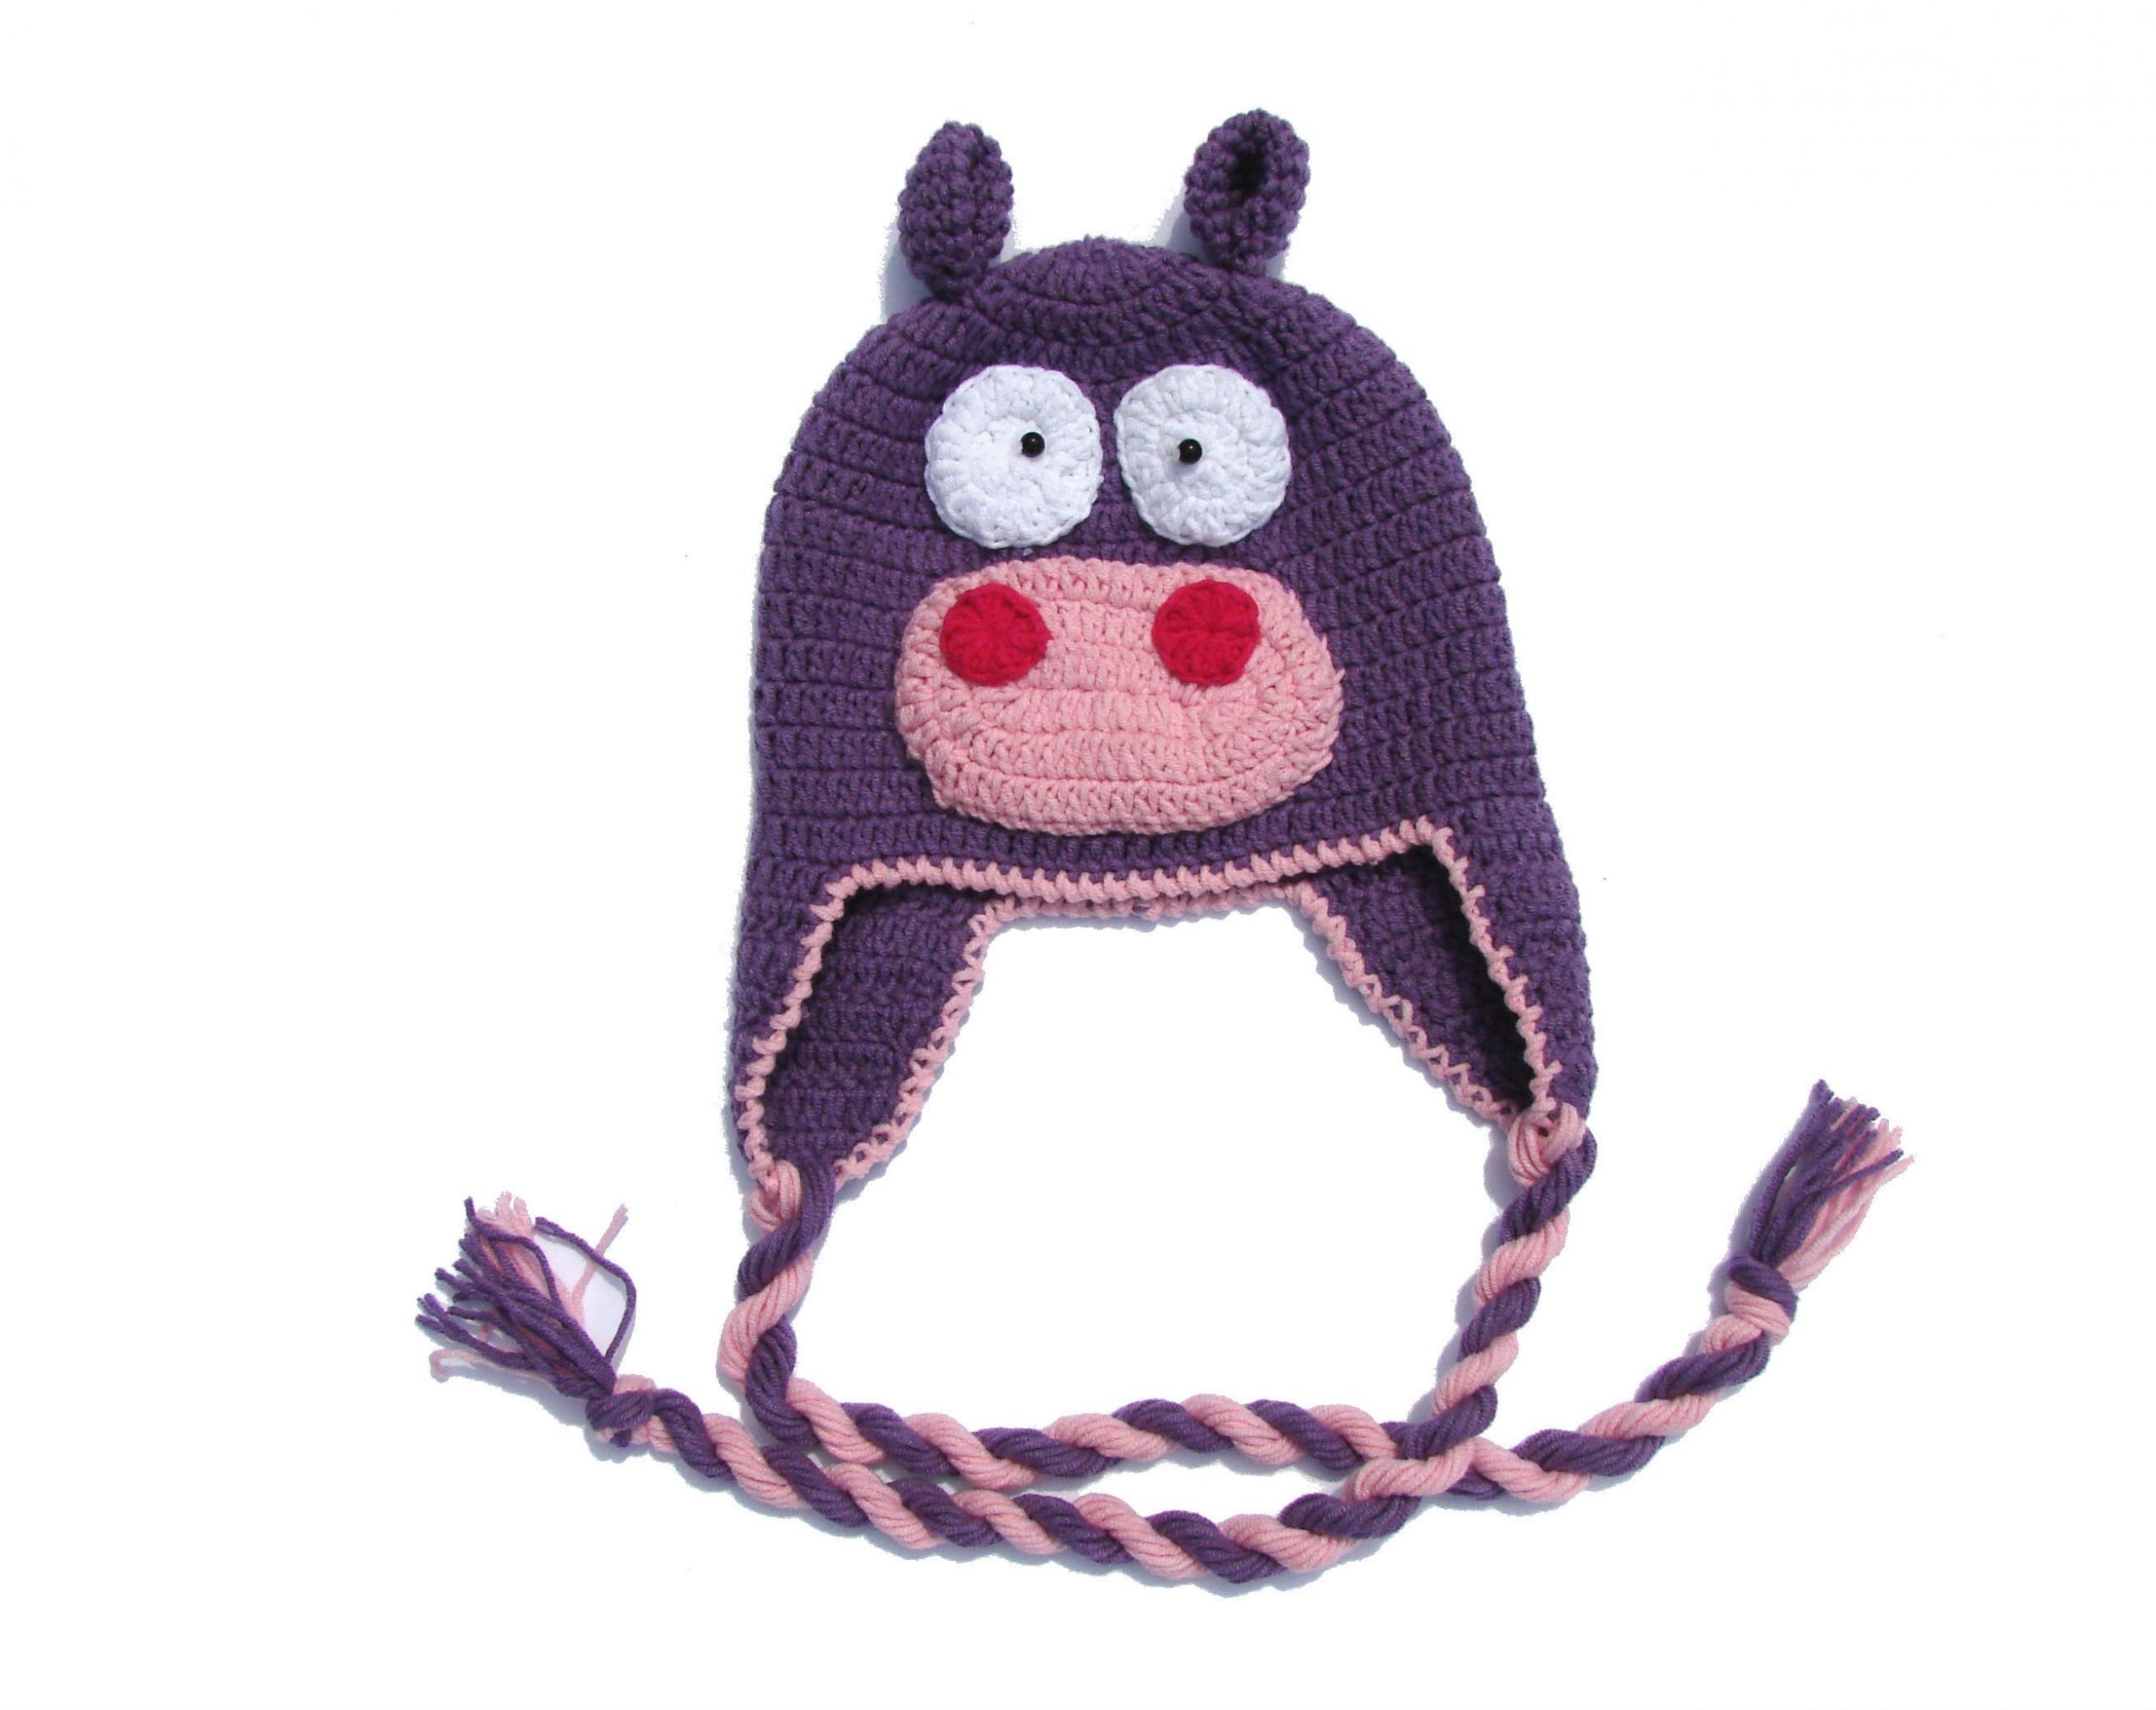 Crochet baby hat Hipo, Baby bonnet, Hand knitted cotton newborn hat, Kids animal hat, Autumn …